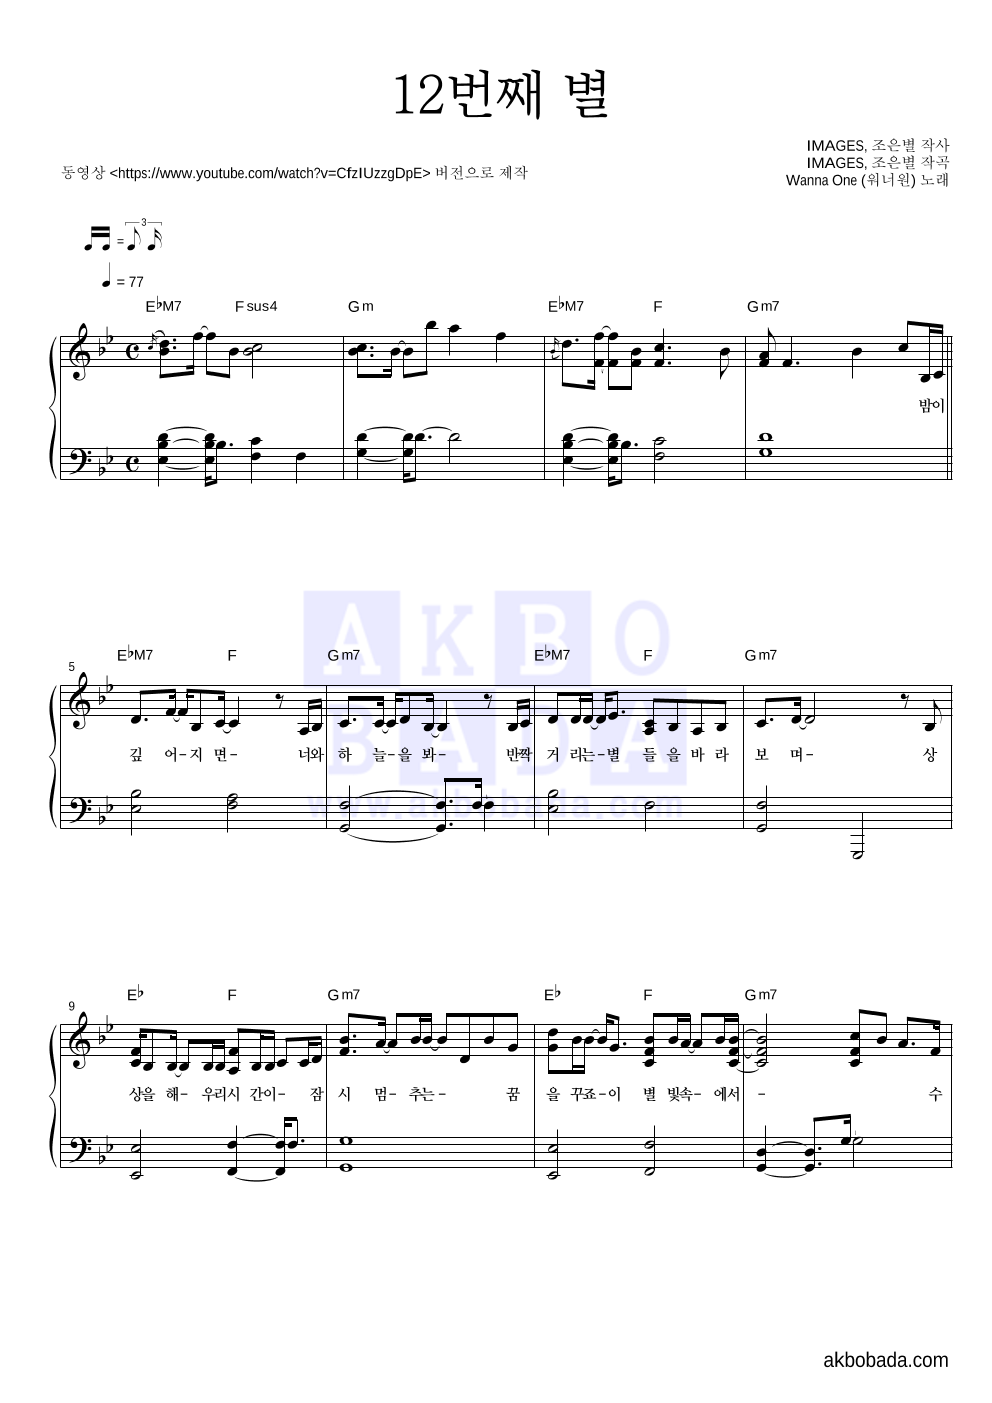 워너원 - 12번째 별 피아노 2단 악보 